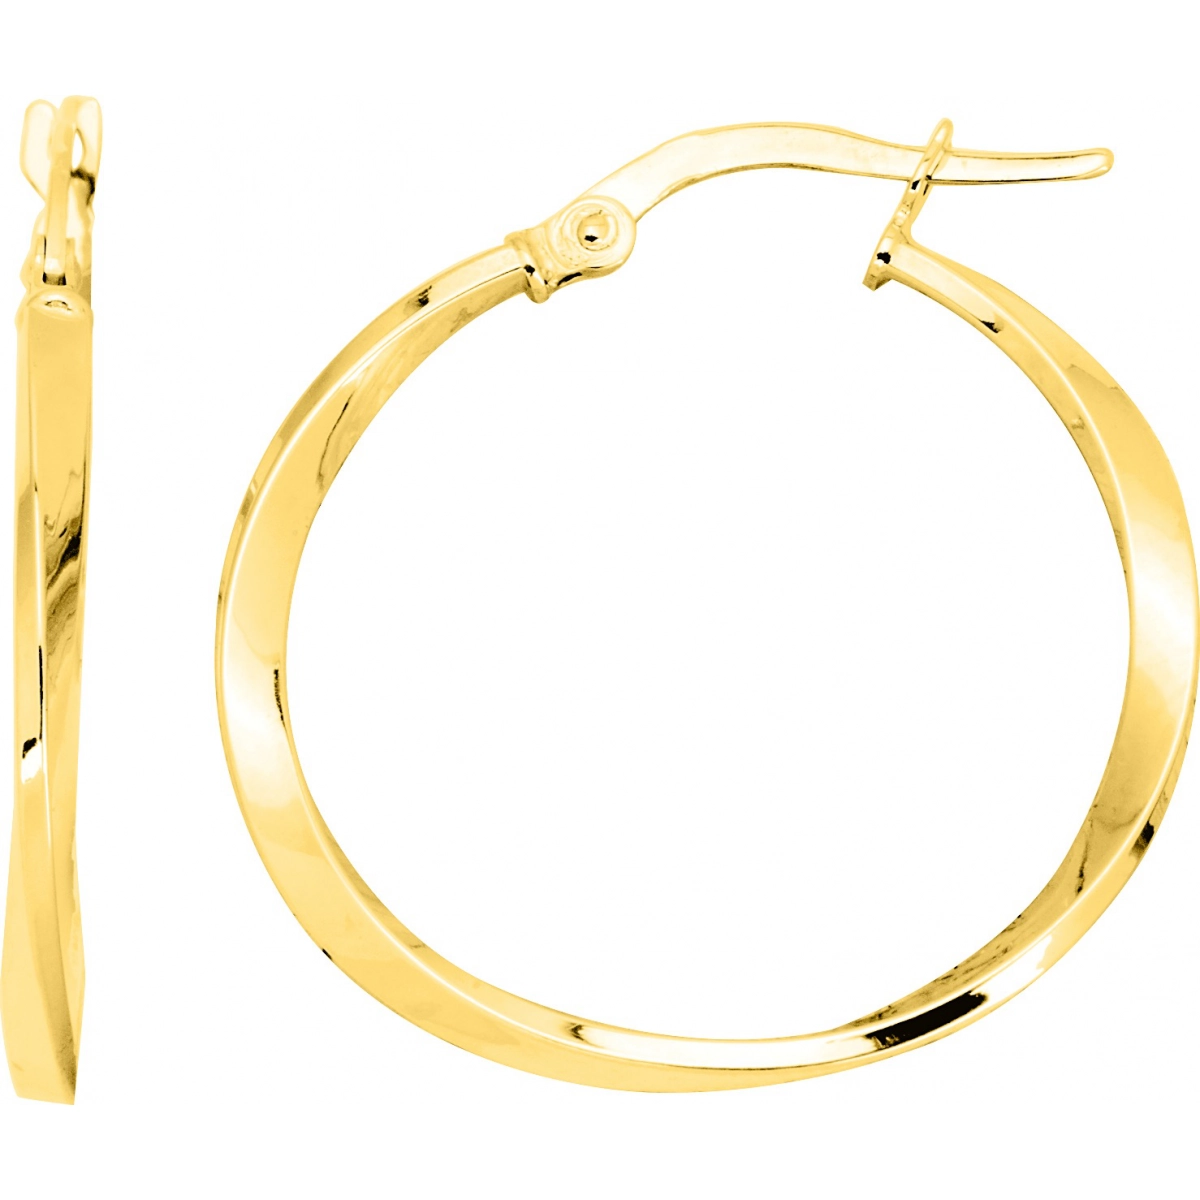 Hoops earrings pair 9K YG  Lua Blanca  9K3409.0